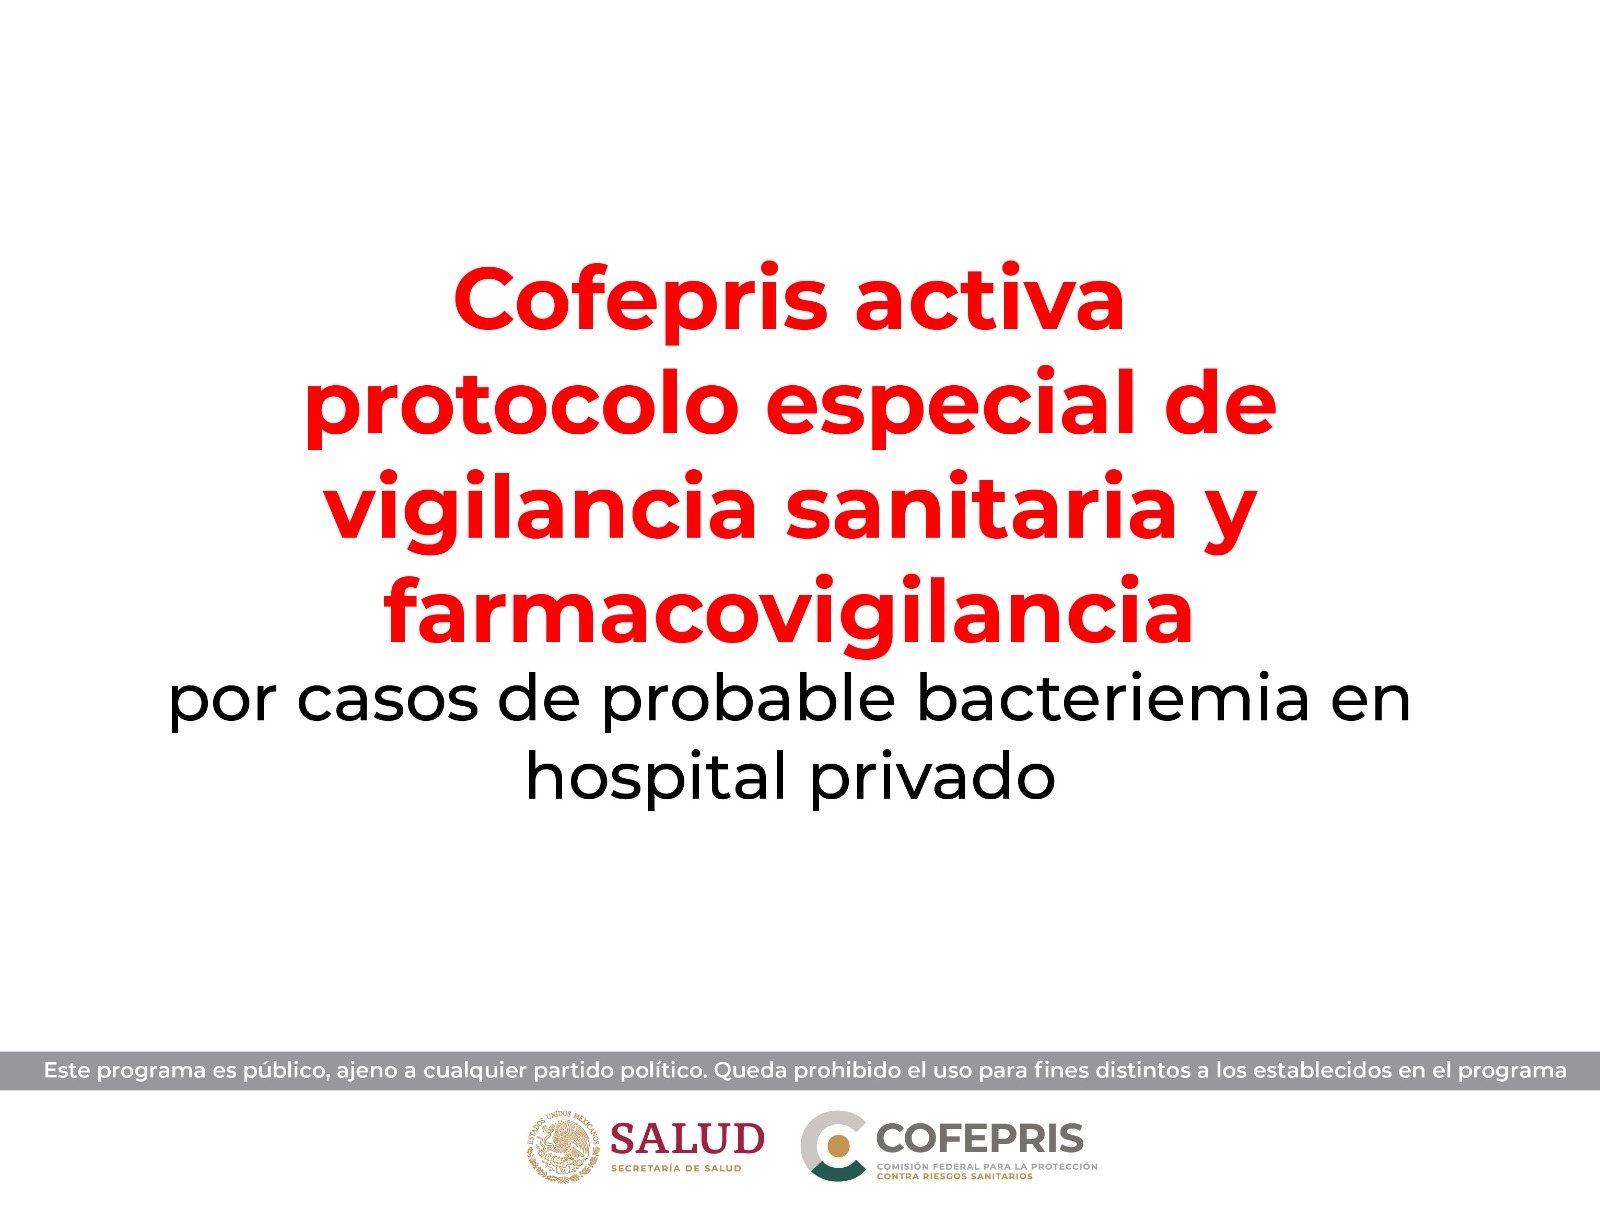 Cofepris activa protocolo especial de vigilancia sanitaria y farmacovigilancia por casos de probable bacteriemia en hospital privado